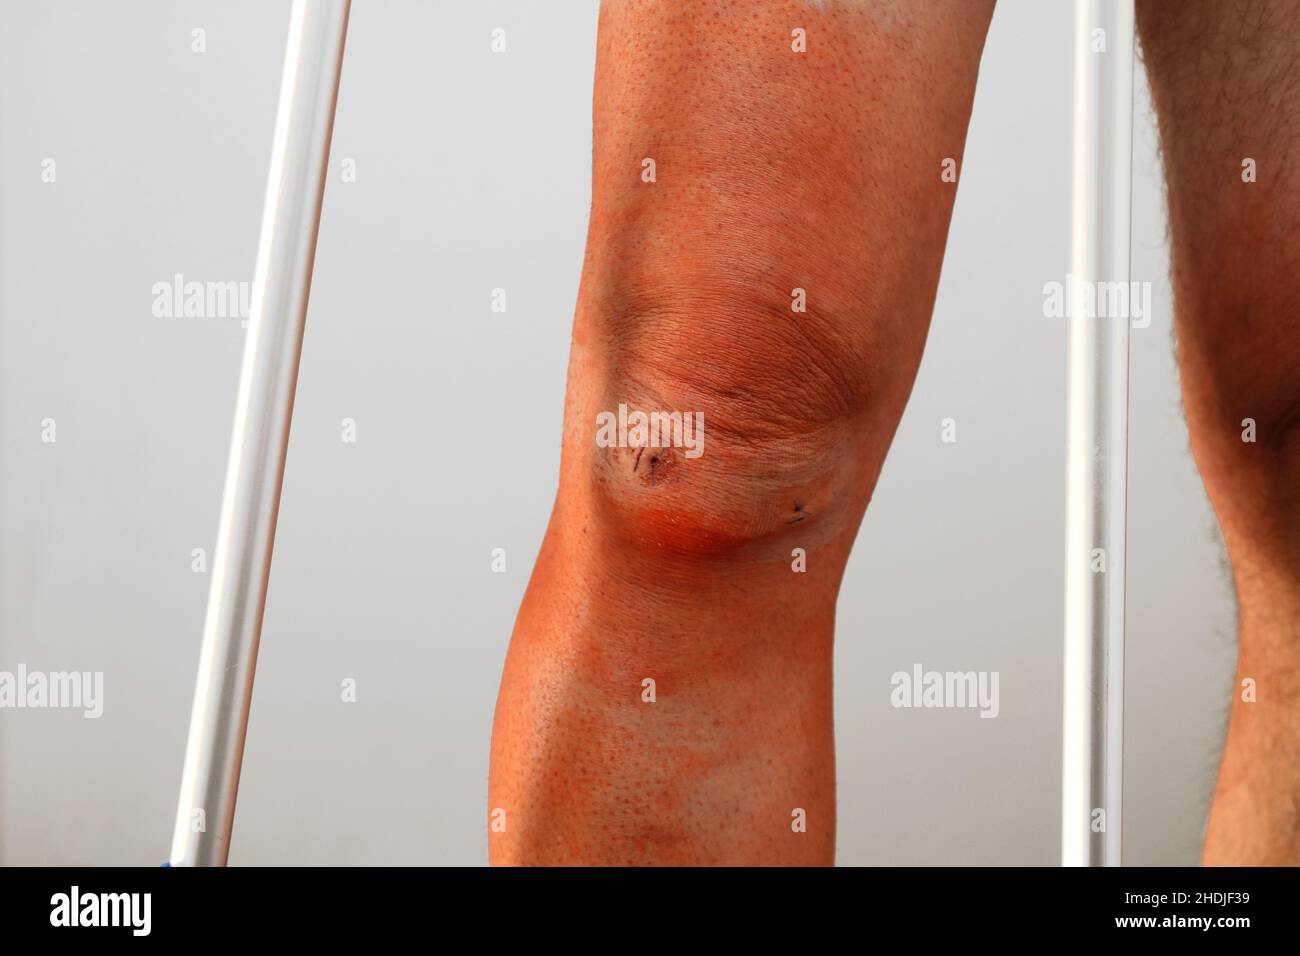 wound, patella, wounds, knee, patellas Stock Photo